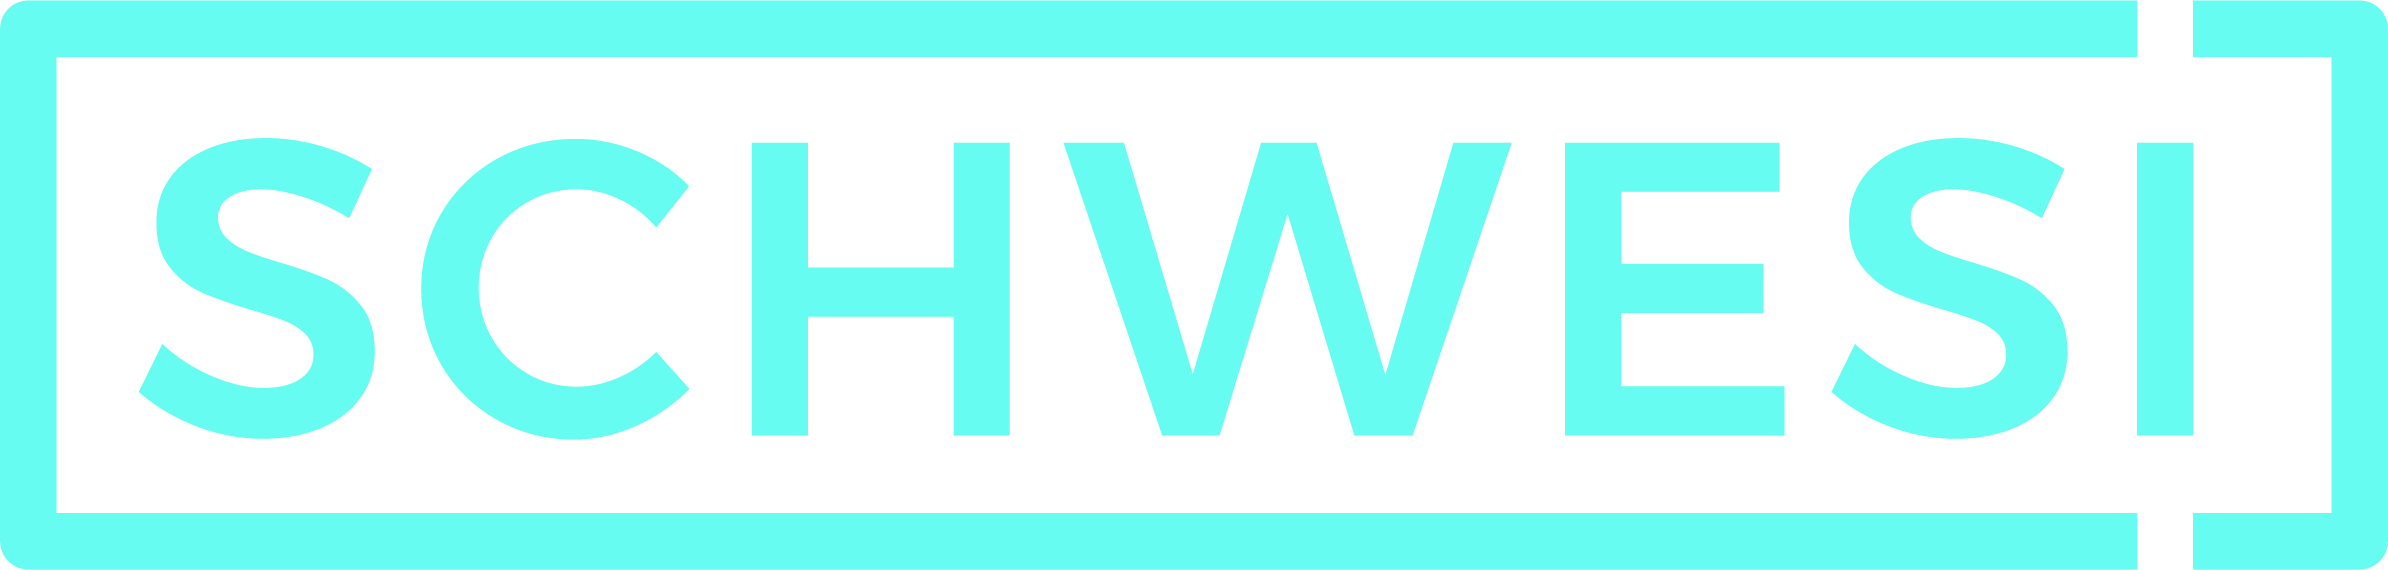 schwesi logo